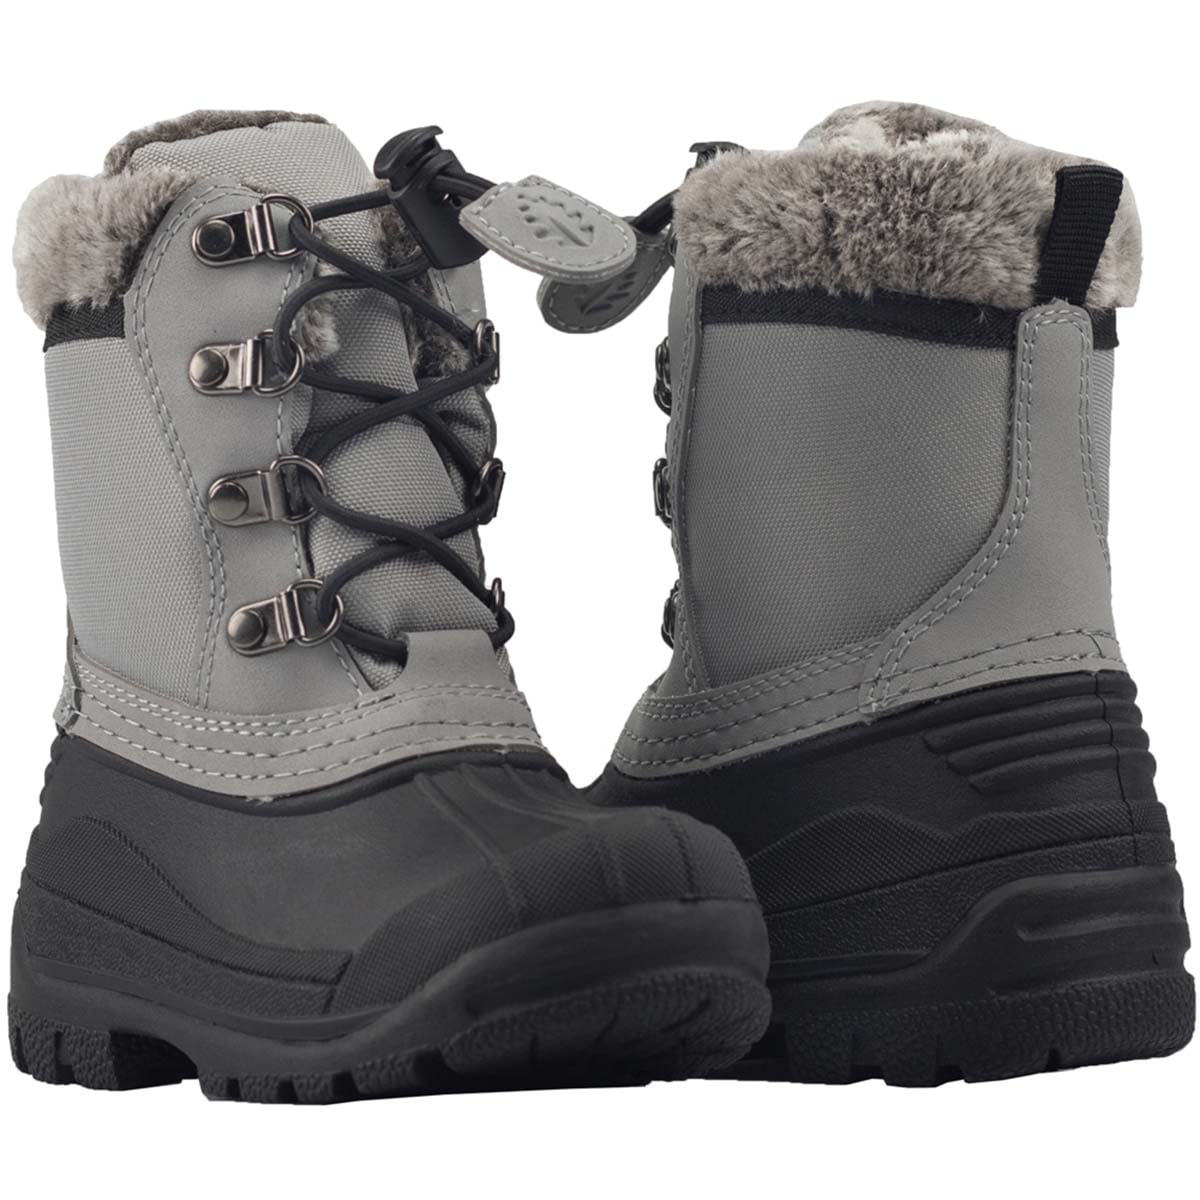 walmart boots for children